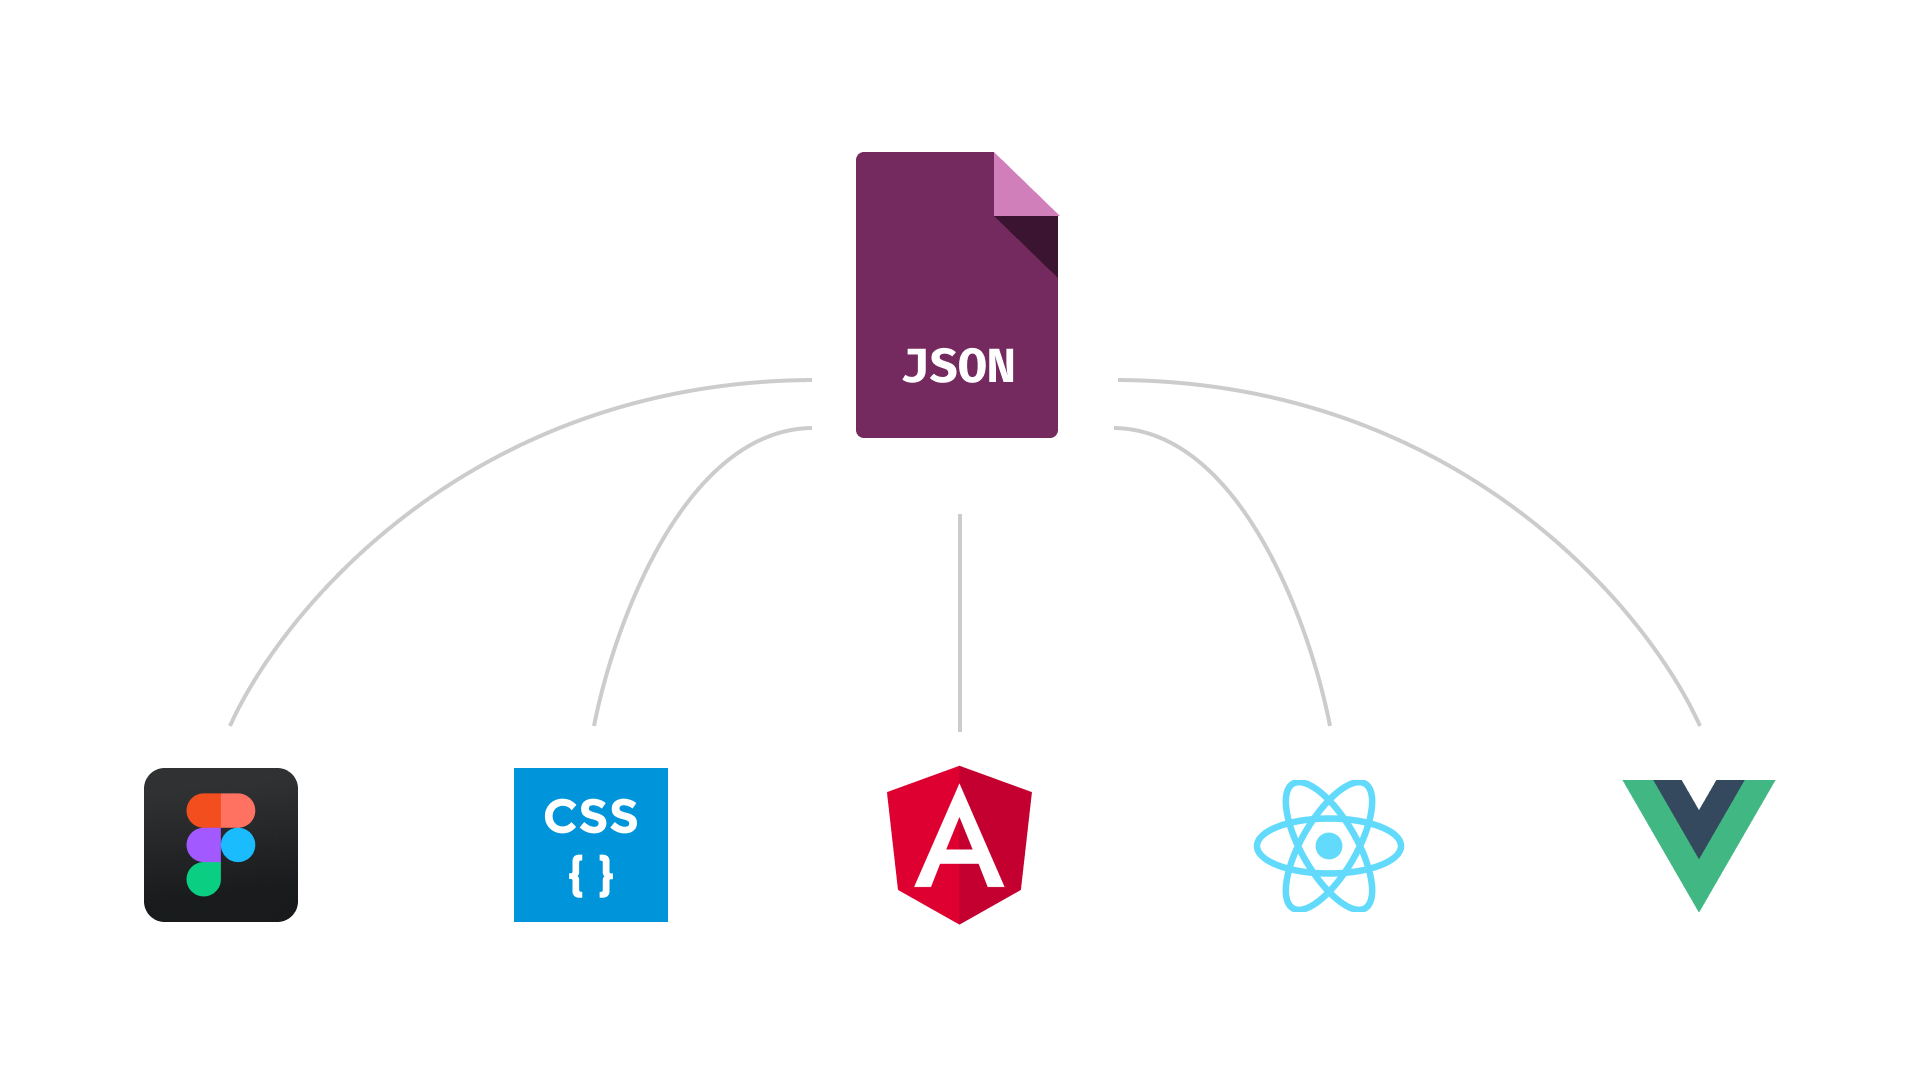 JSON bestand met vertakkingen naar Figma, CSS, Angular, React en Vue.